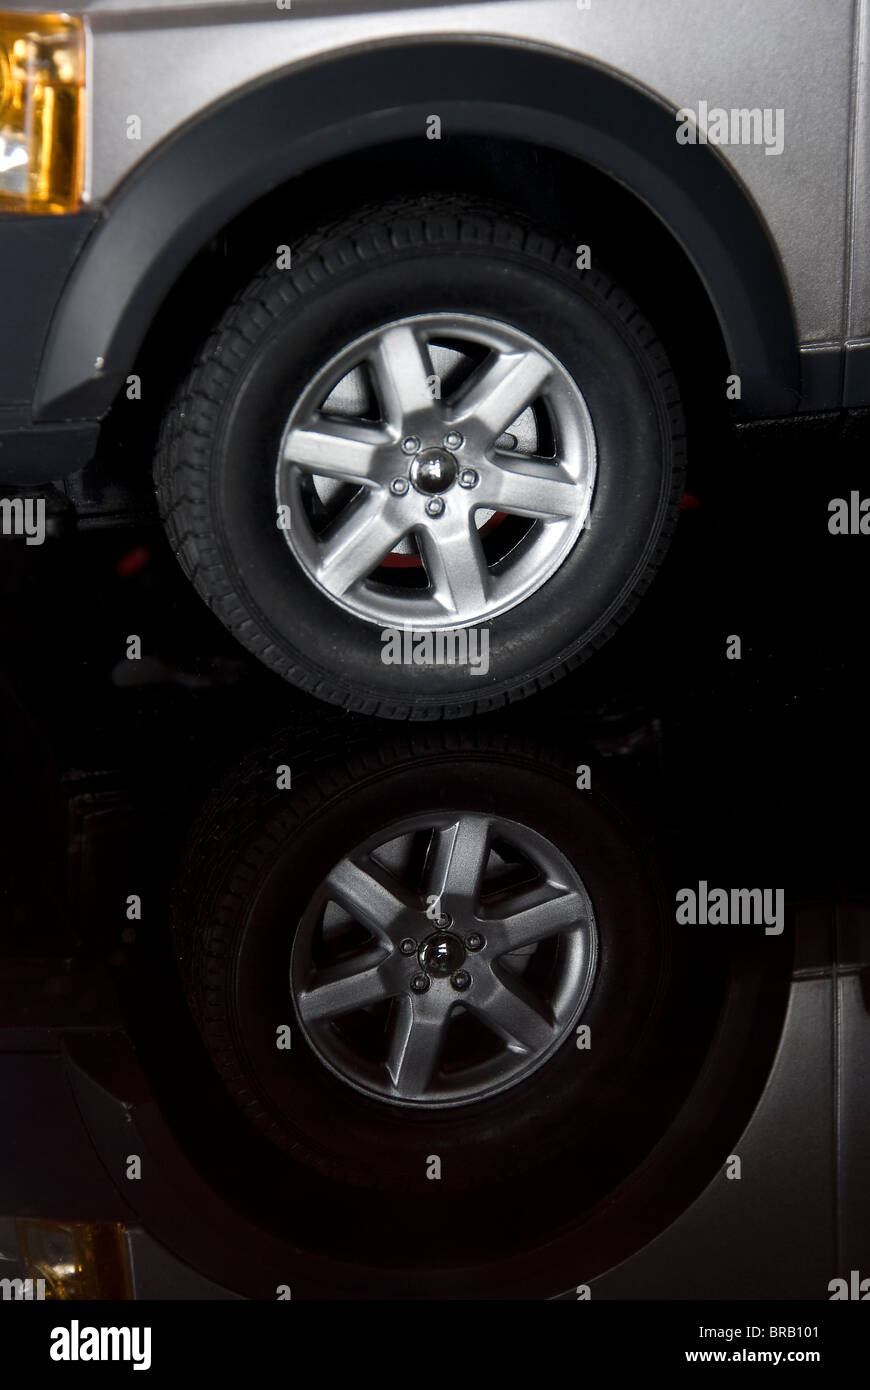 Reflet de pneu de voiture Banque D'Images